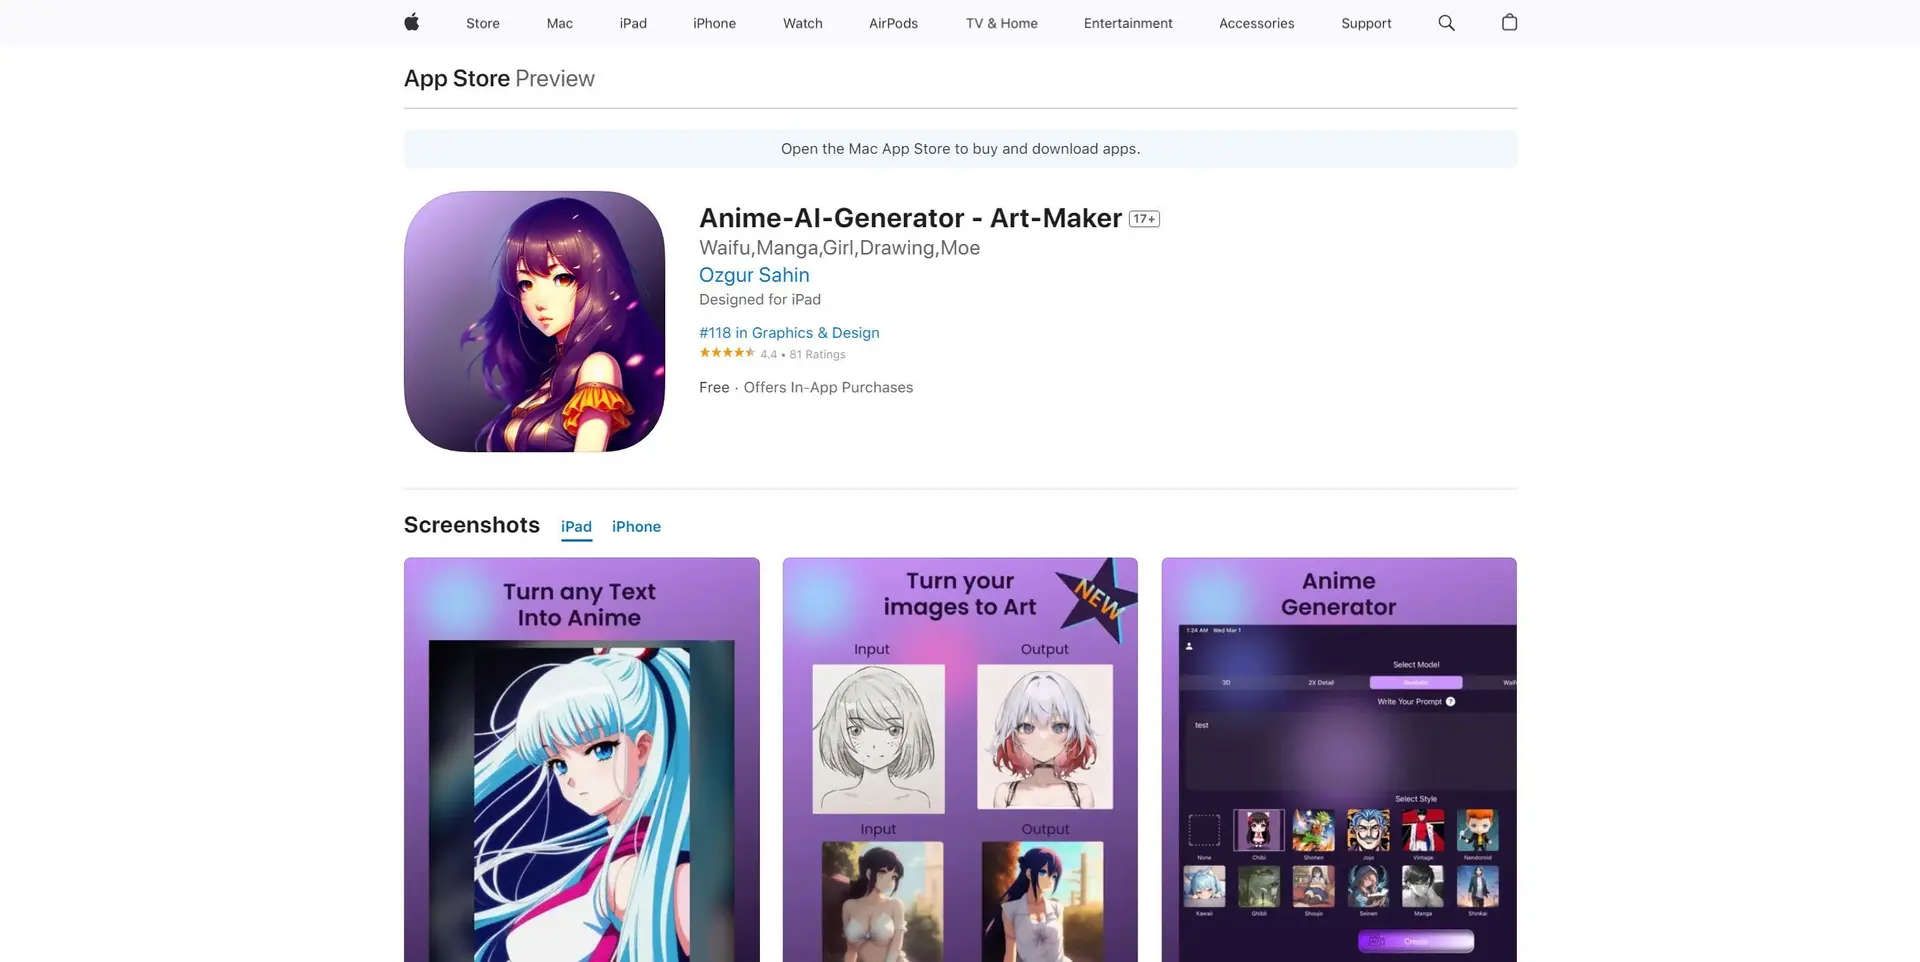 Anime AI Generatorwebsite picture